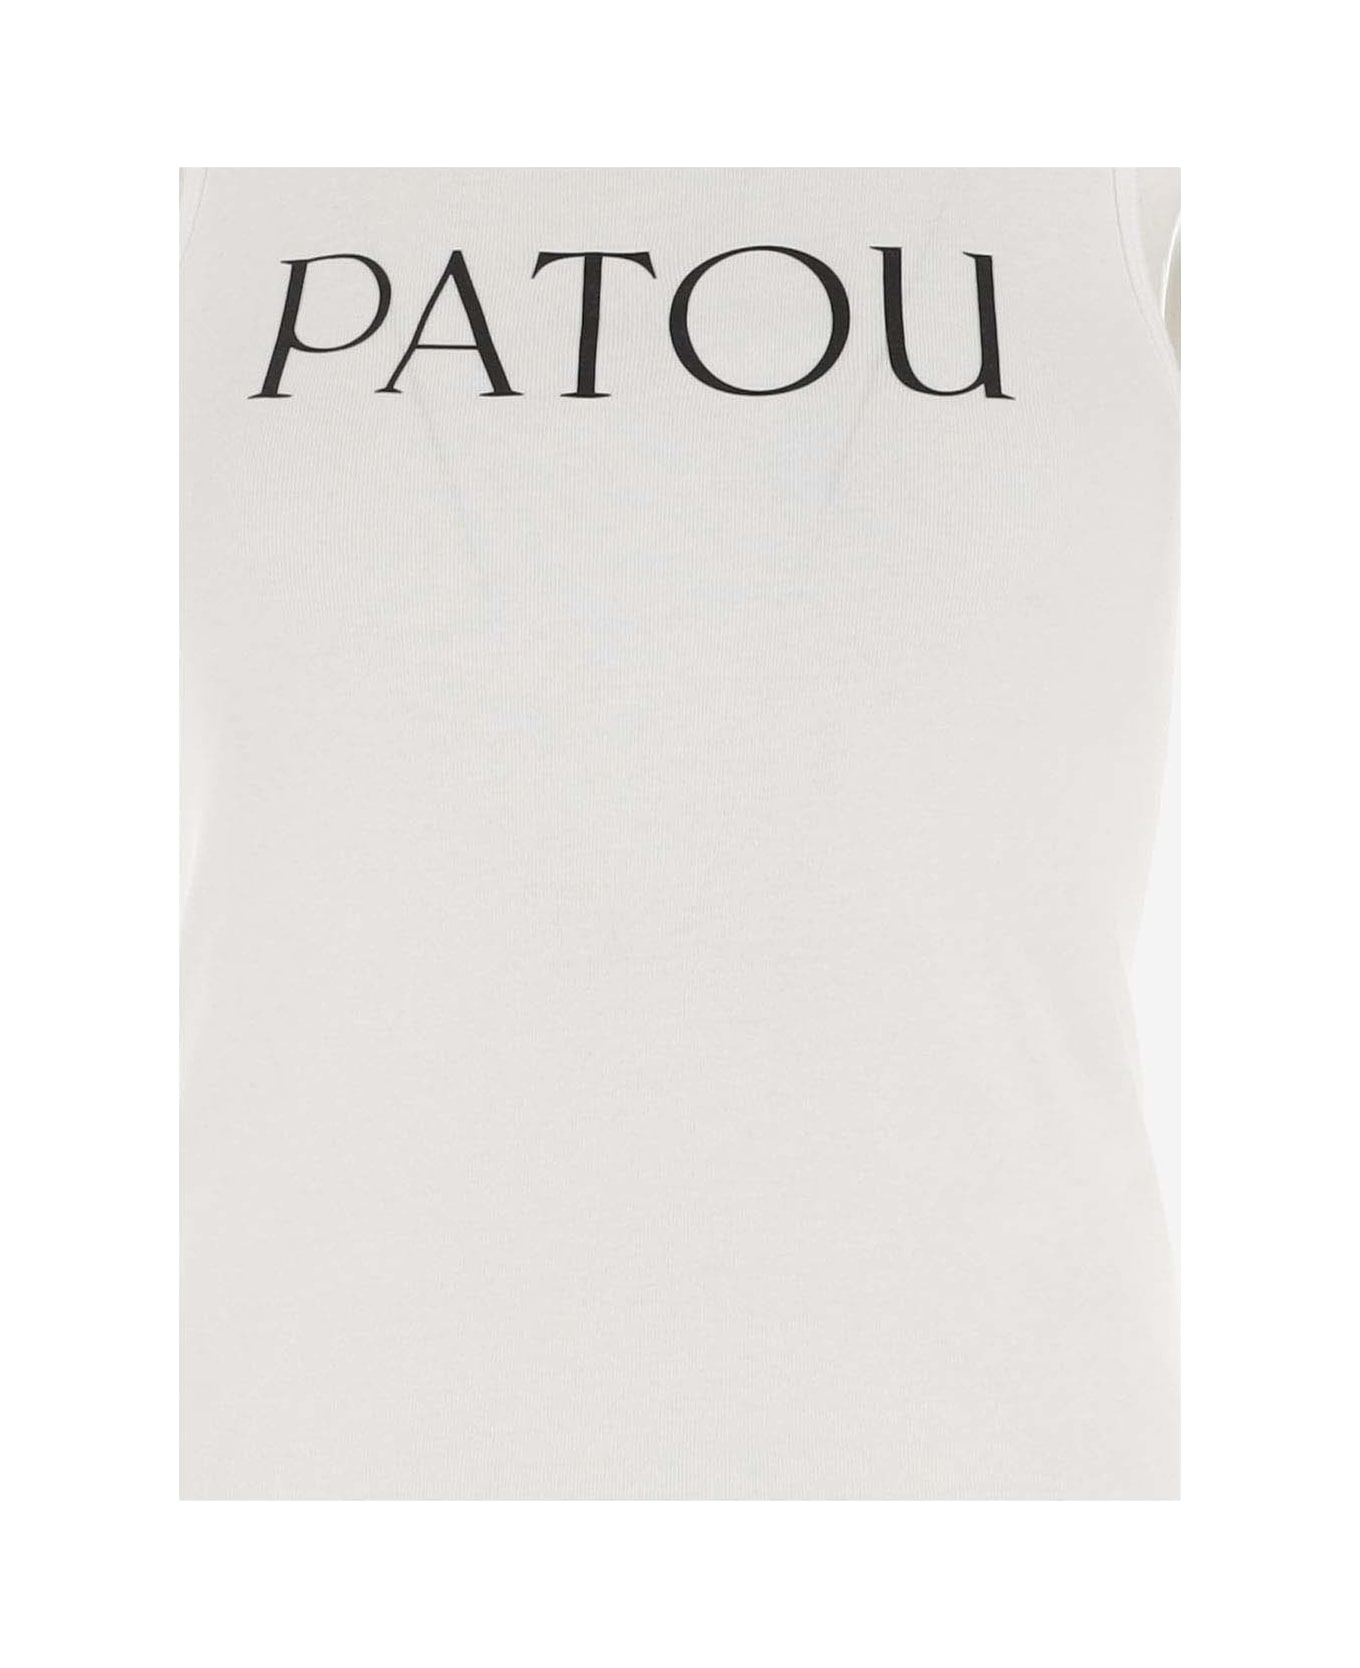 Patou Tank Top With Logo - White タンクトップ